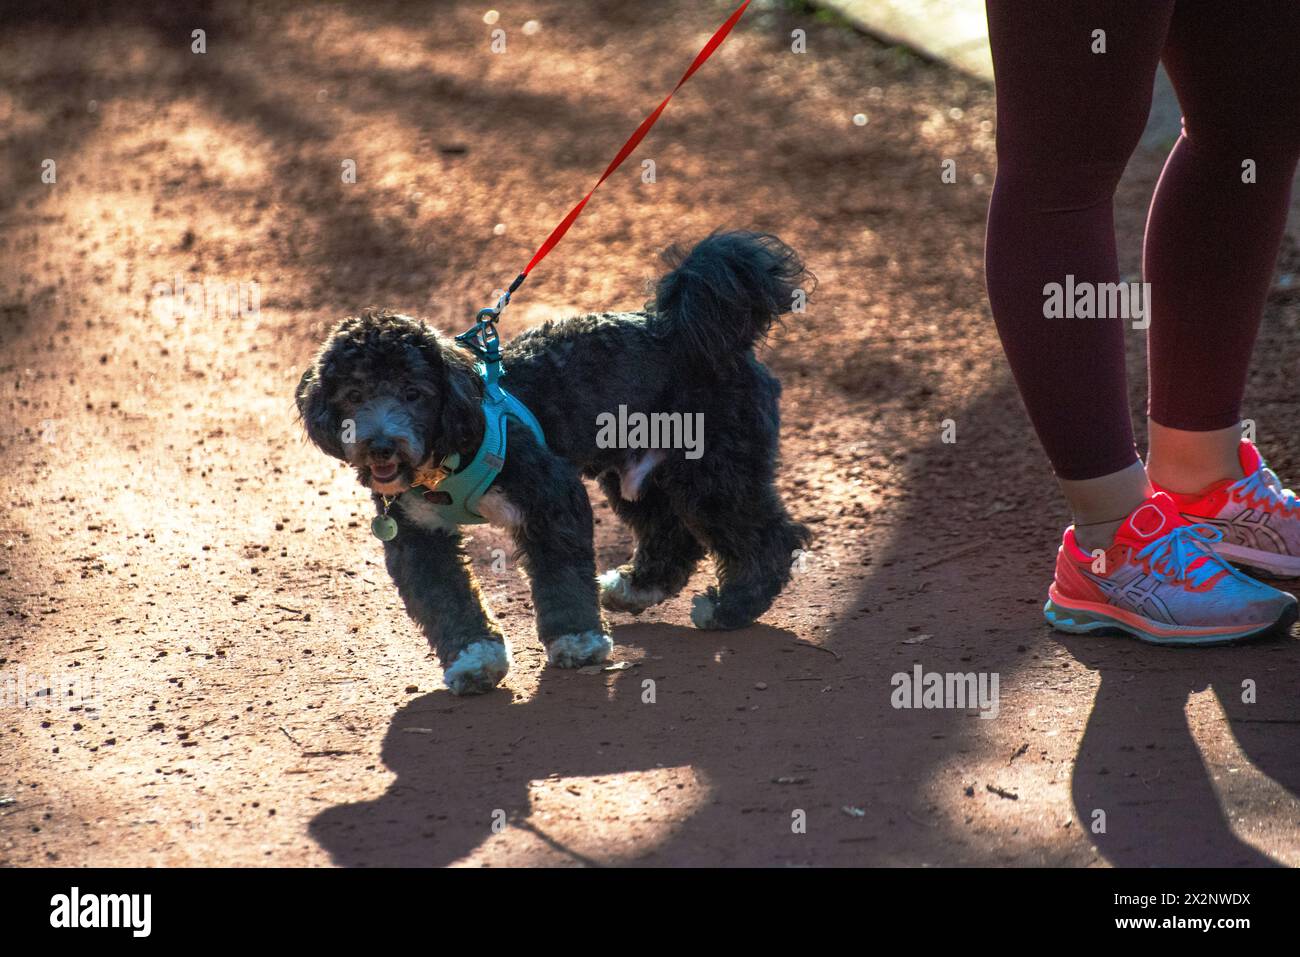 Un chien Maltipoo accompagne joyeusement sa propriétaire lors d'une course matinale, favorisant un lien de santé et de compagnie. Banque D'Images